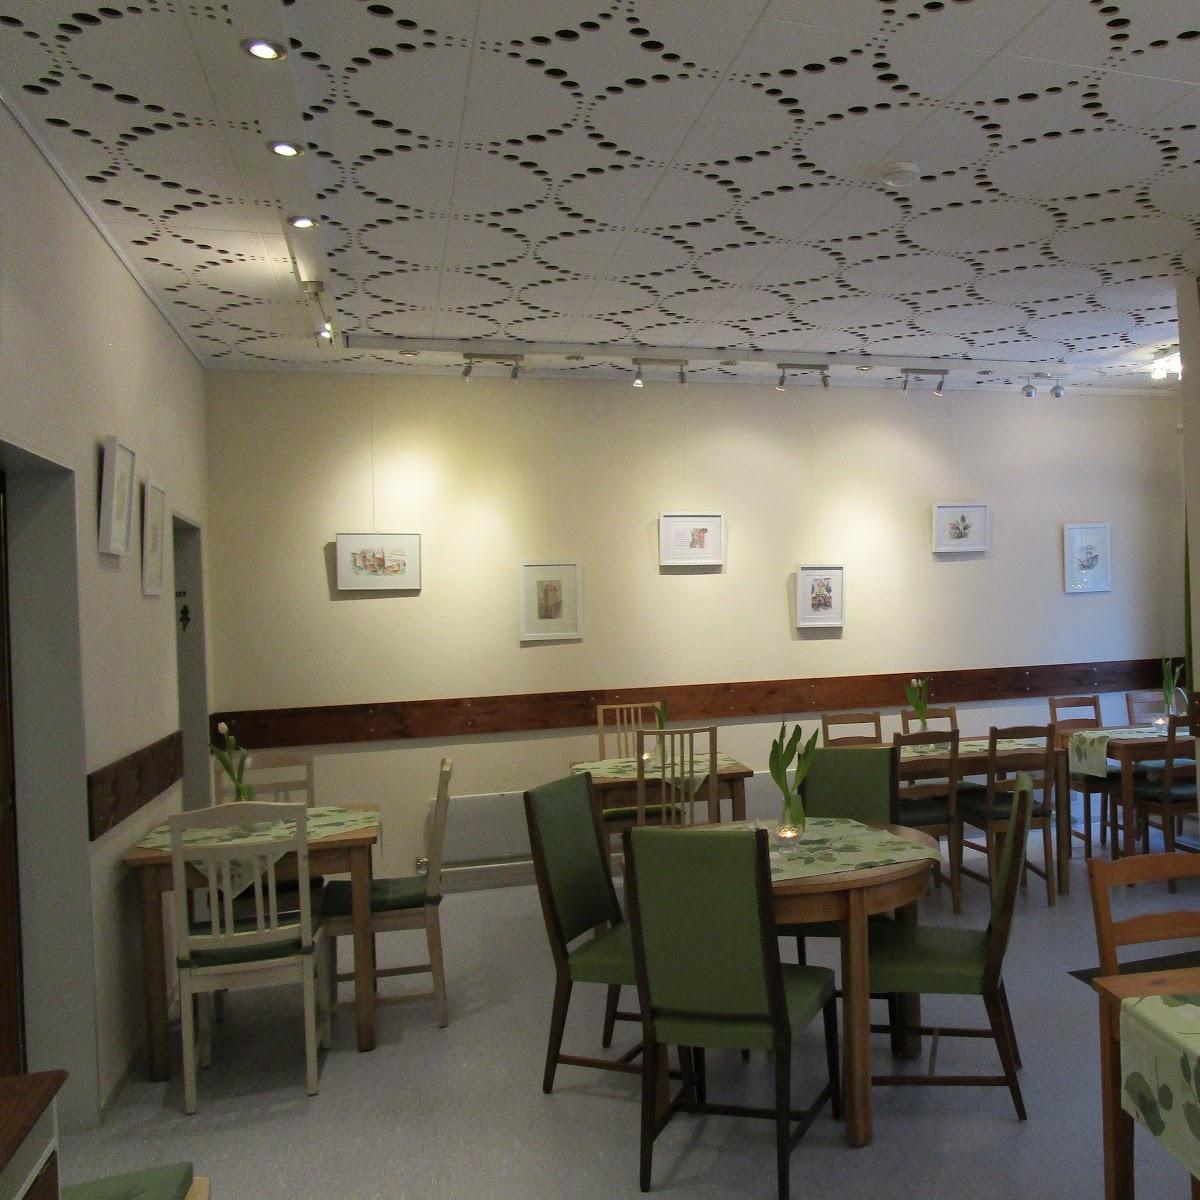 Restaurant "Altstadt Cafe" in Münnerstadt